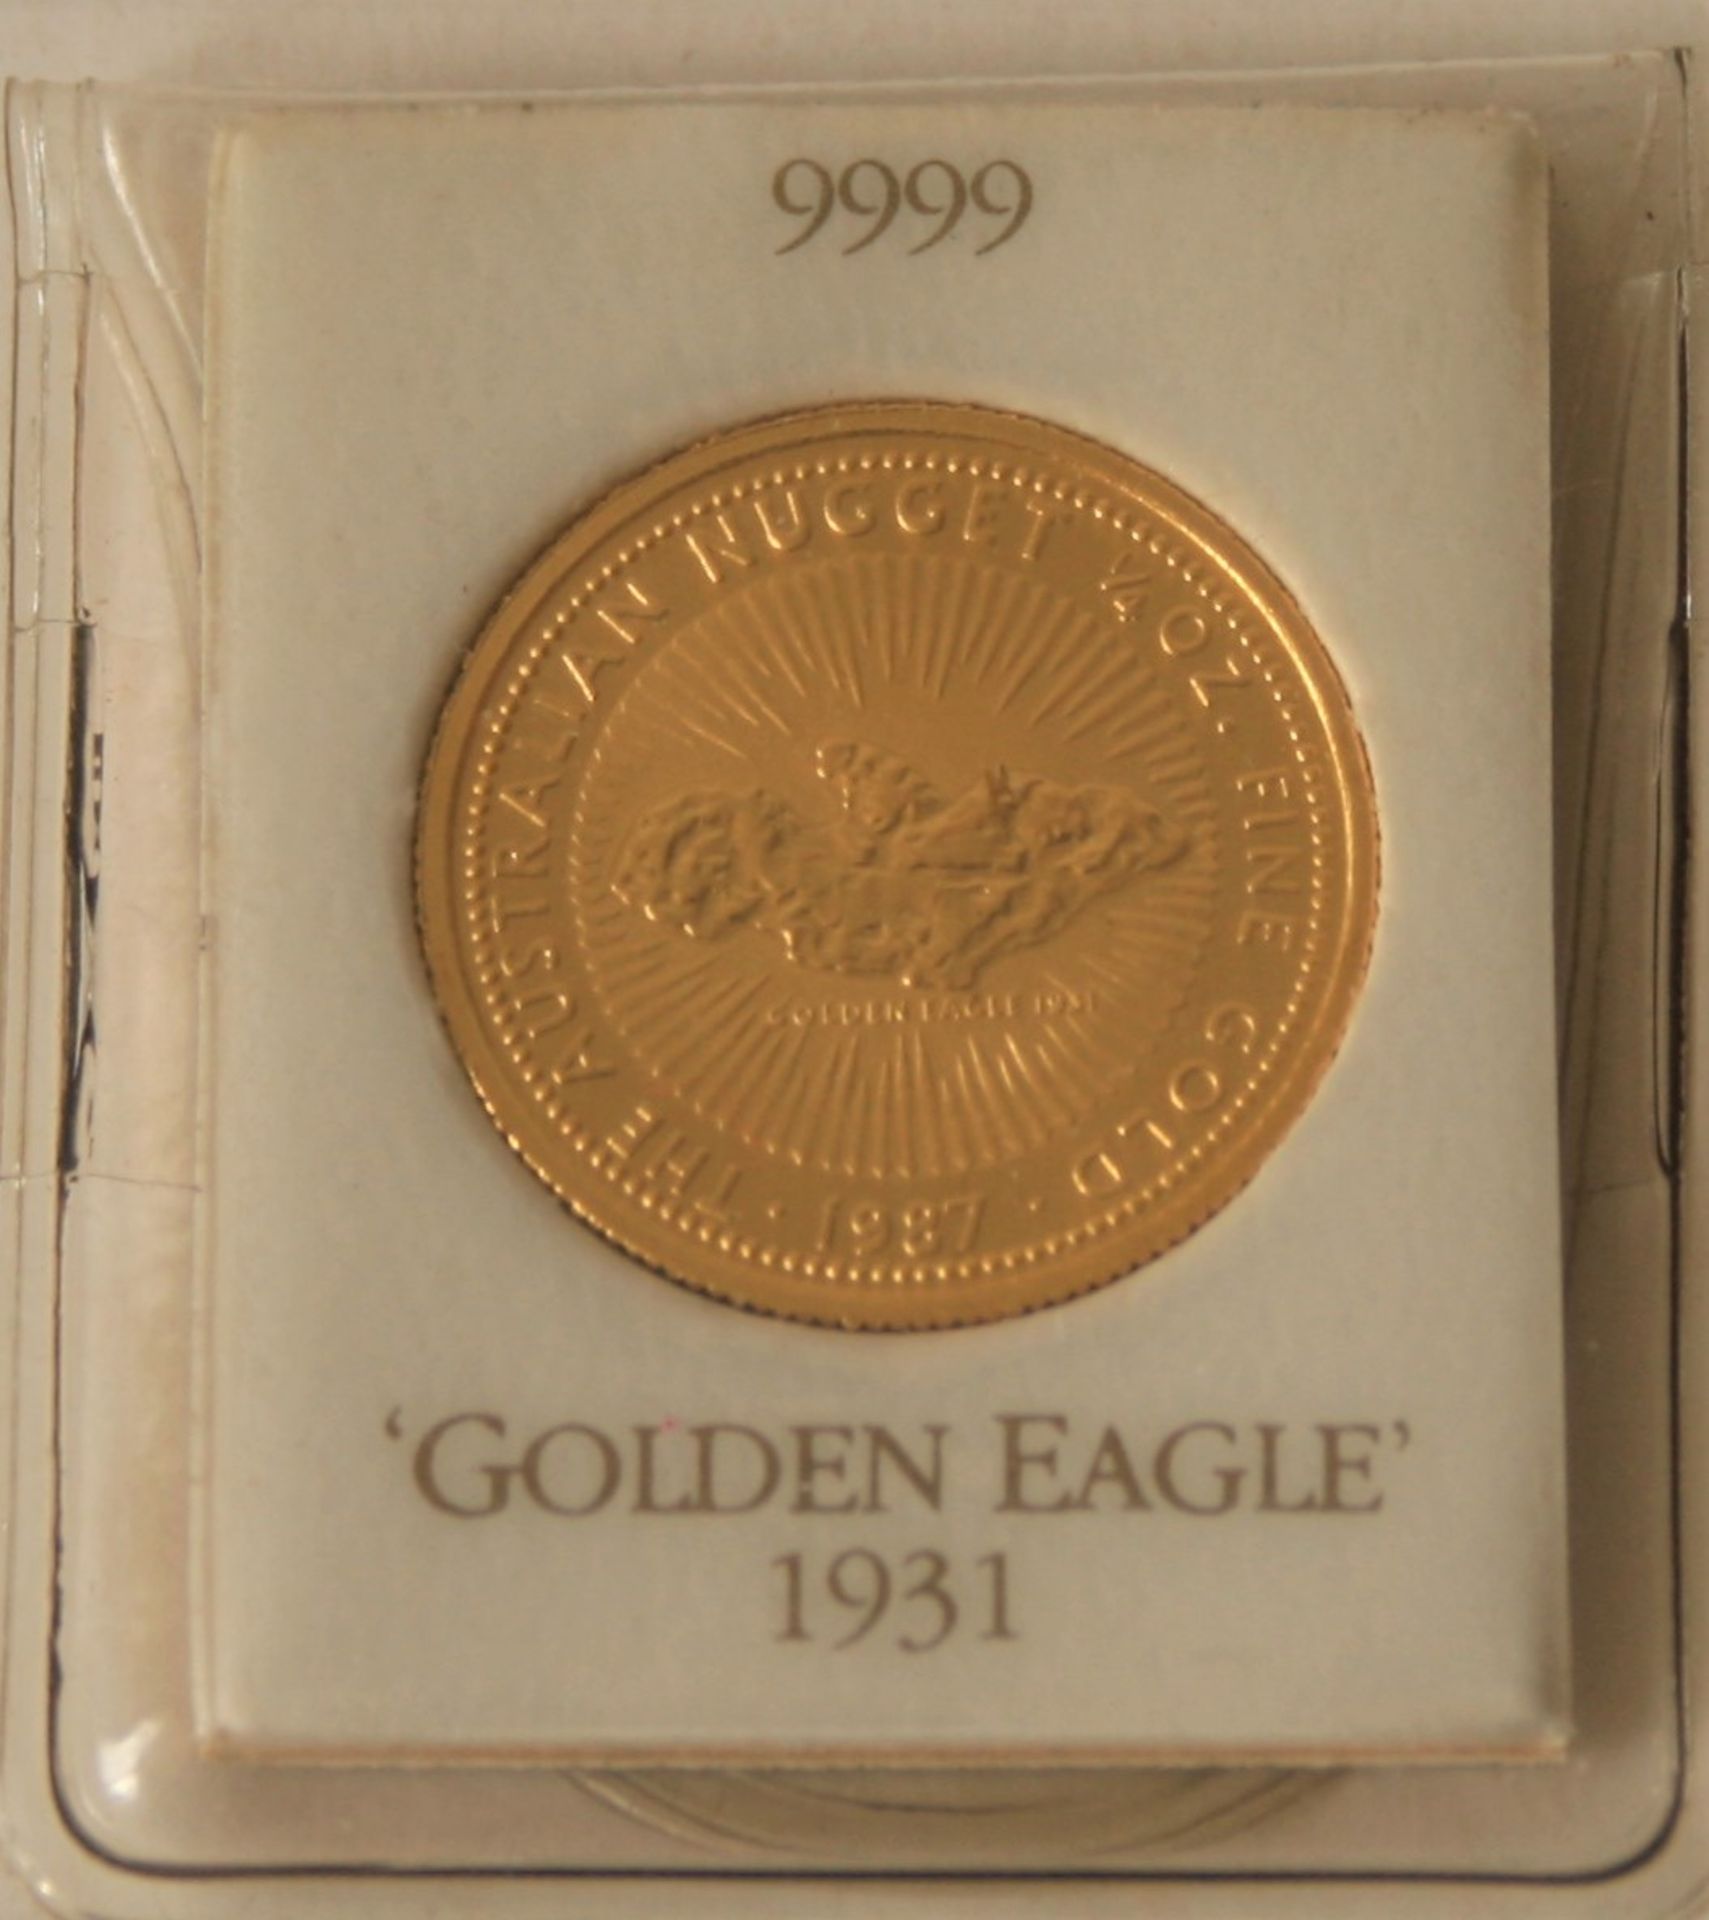 Pièce en or 999 Élisabeth II Australia Gold Nugget 1/4 Oz 25$, 1987 - Poids : 7,78 [...]